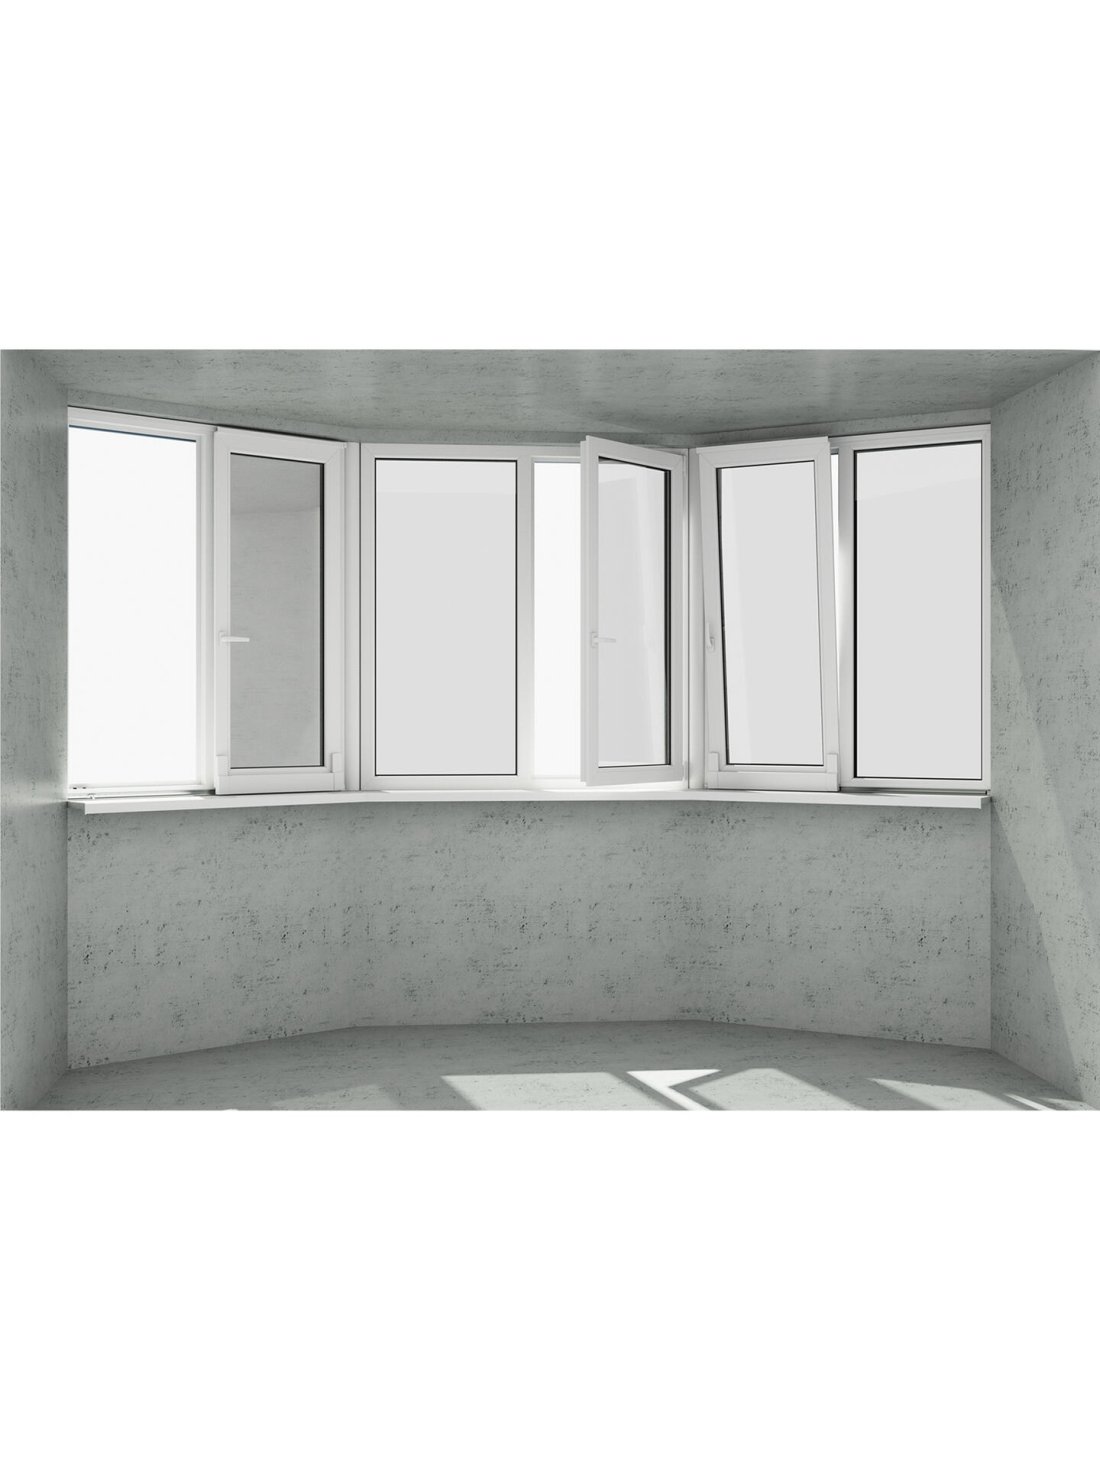 Эркер в виде трапеции: 3 безопасных белых окна 1 классическое и 2 раздвижных (открываются 3 половинки)